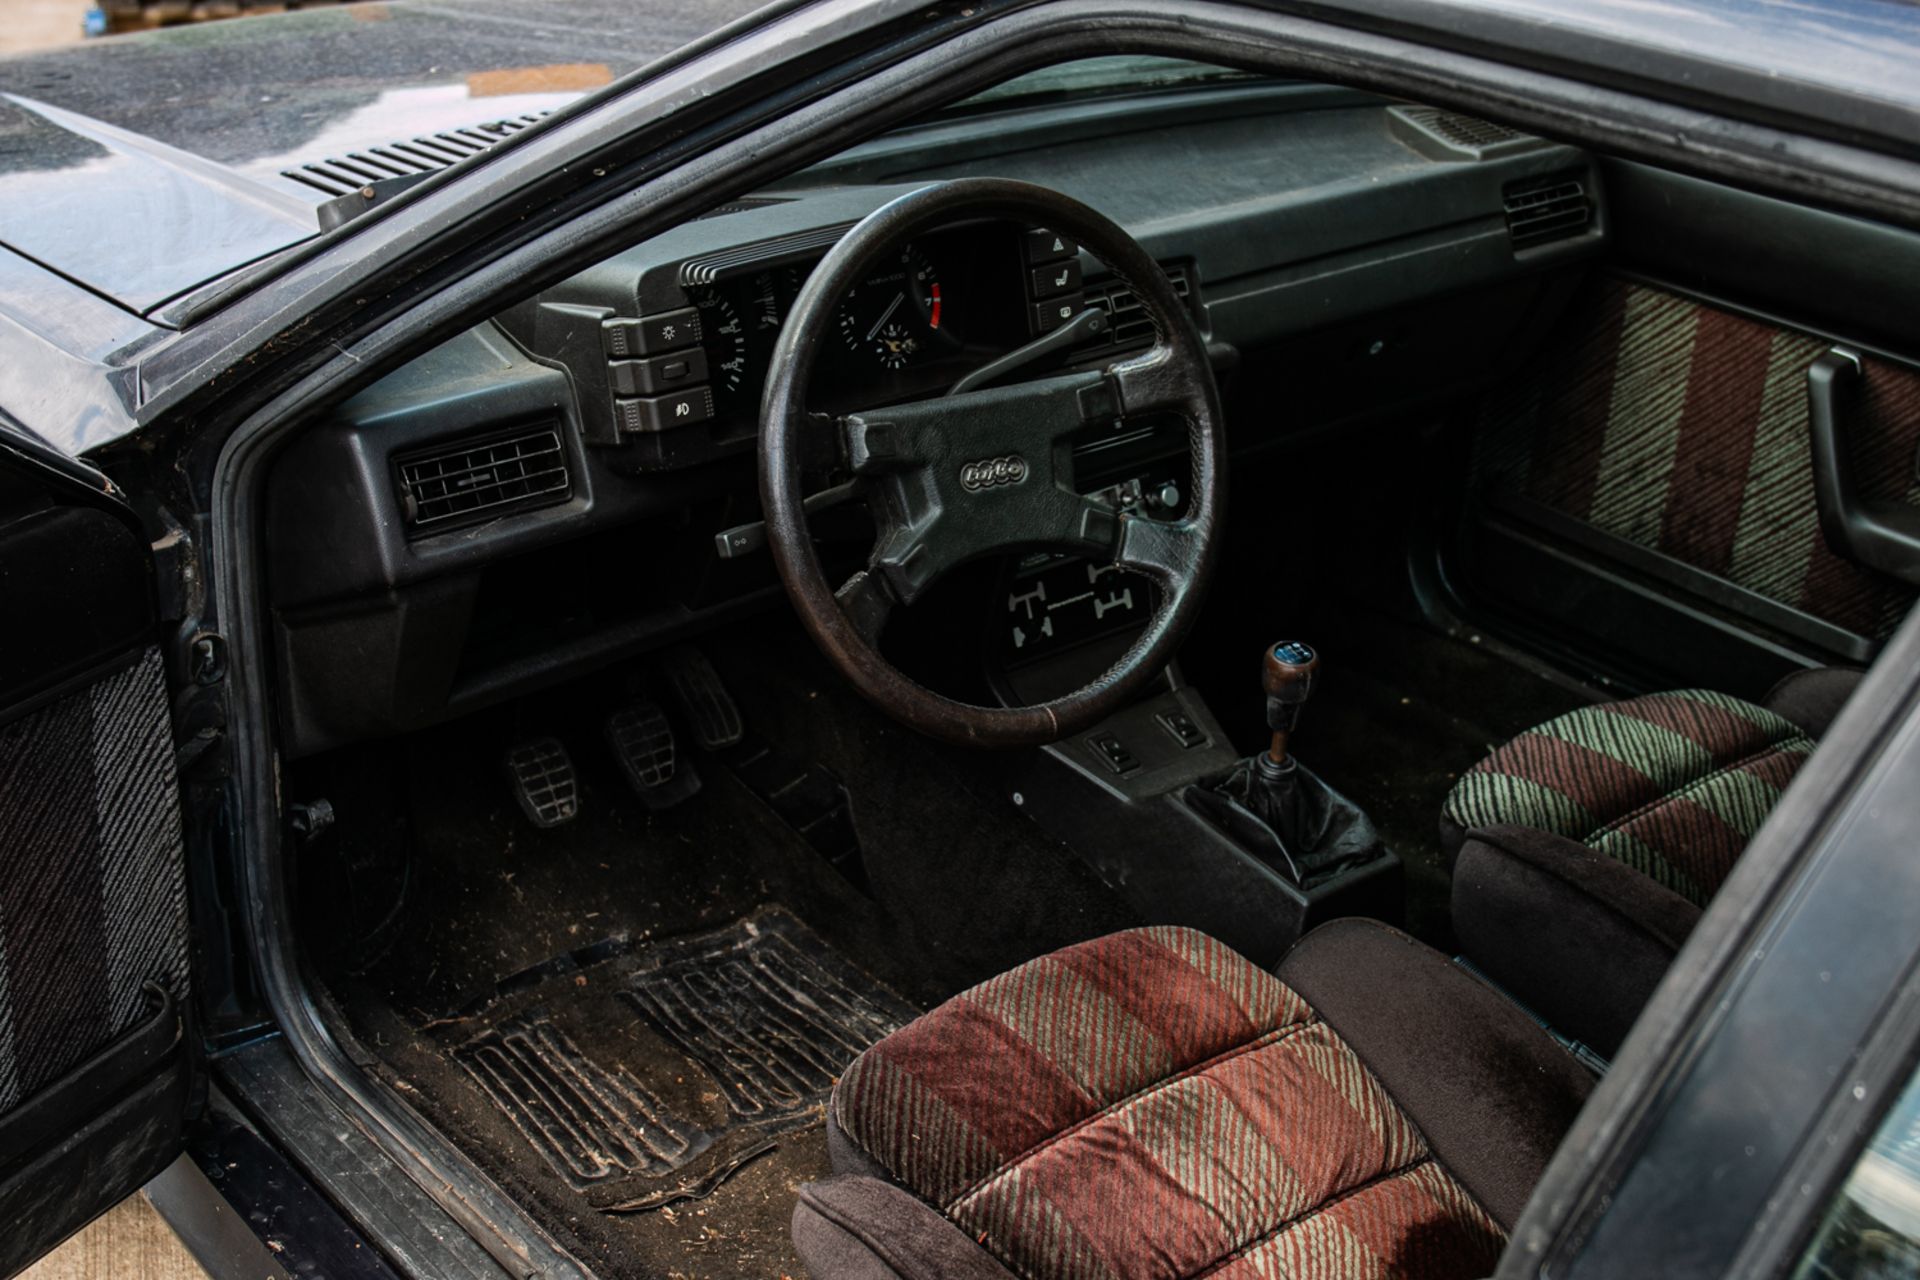 1981 Audi Ur-Quattro Turbo Coupe - Image 10 of 20